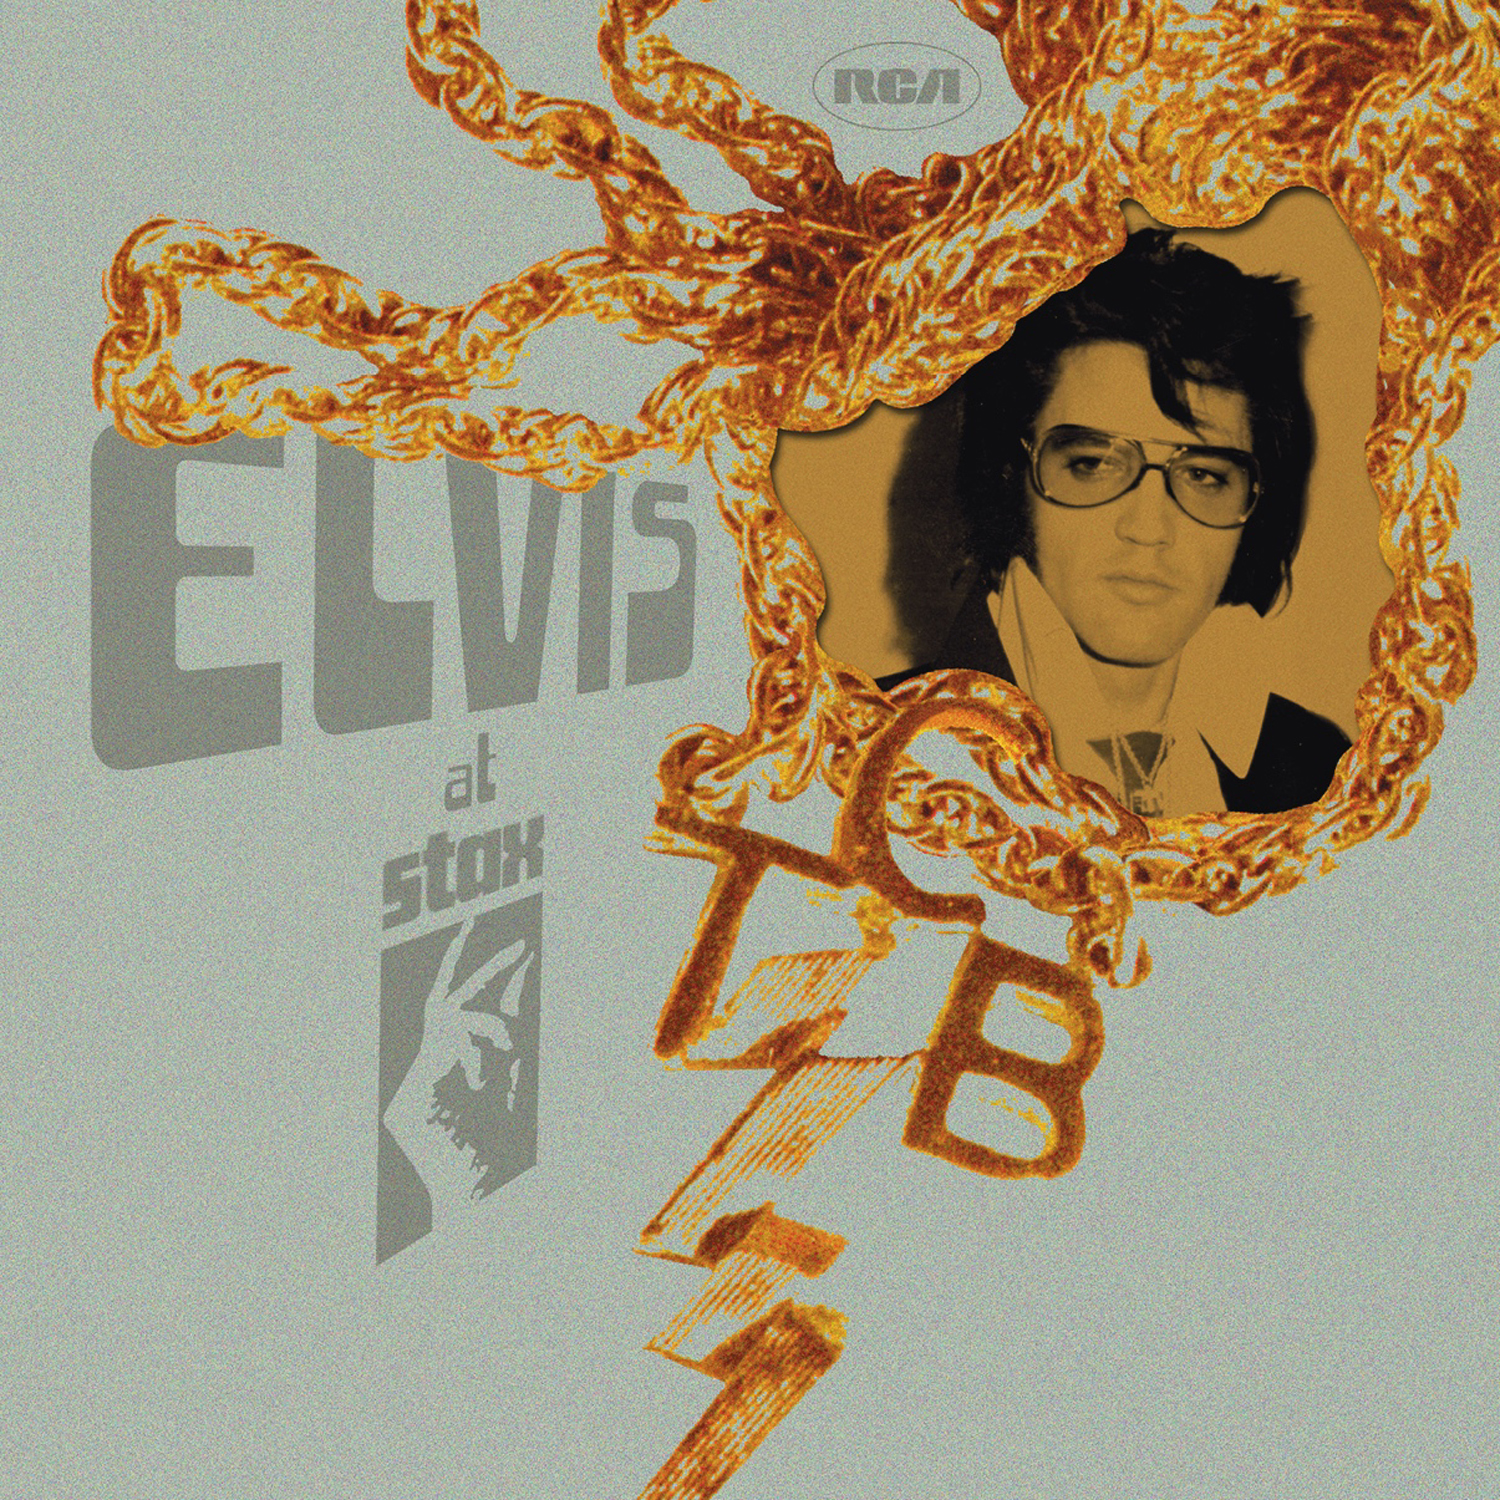 Elvis Presley - "Elvis At Stax"